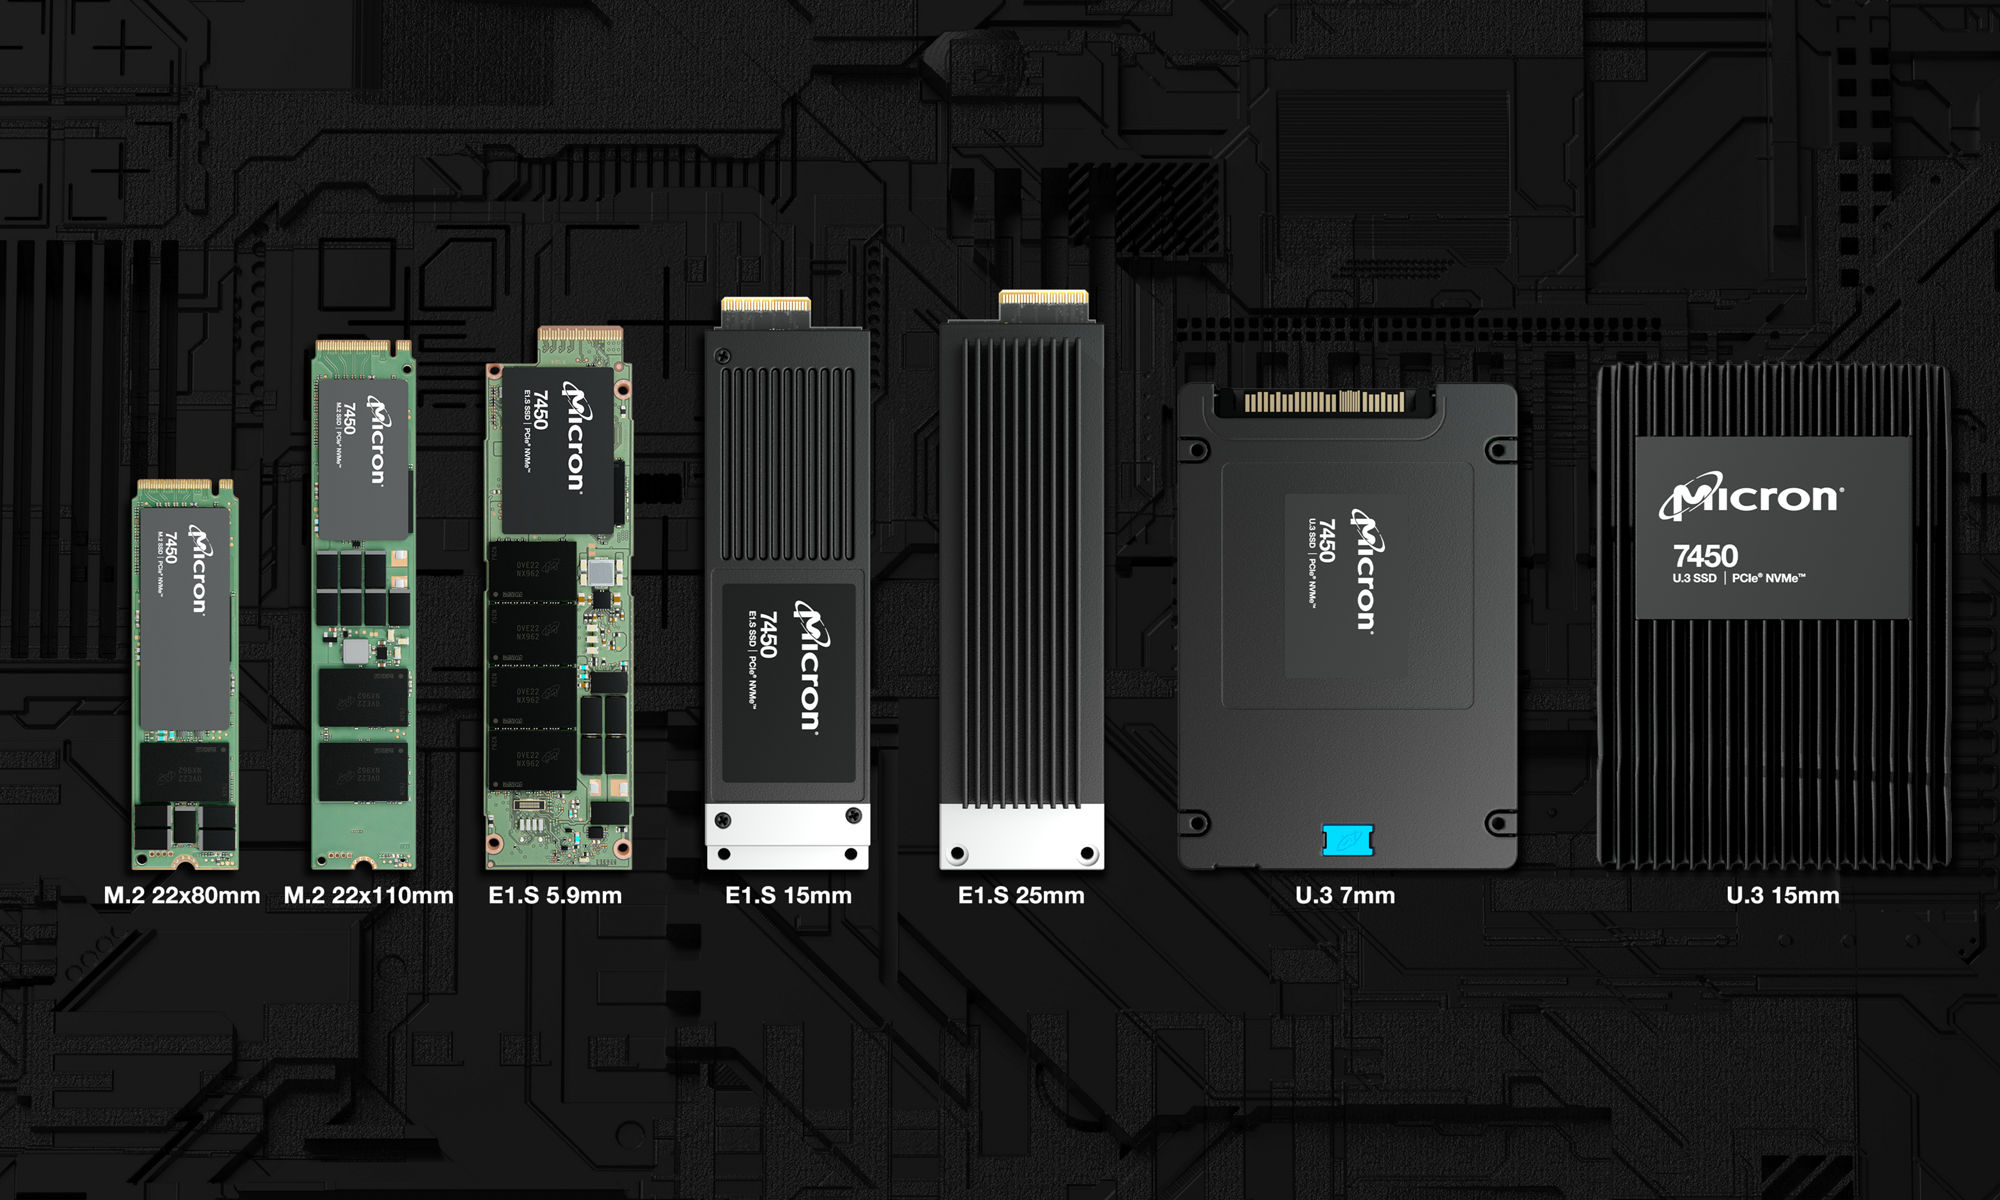 采用 NVMe 的 7450 SSD 产品系列